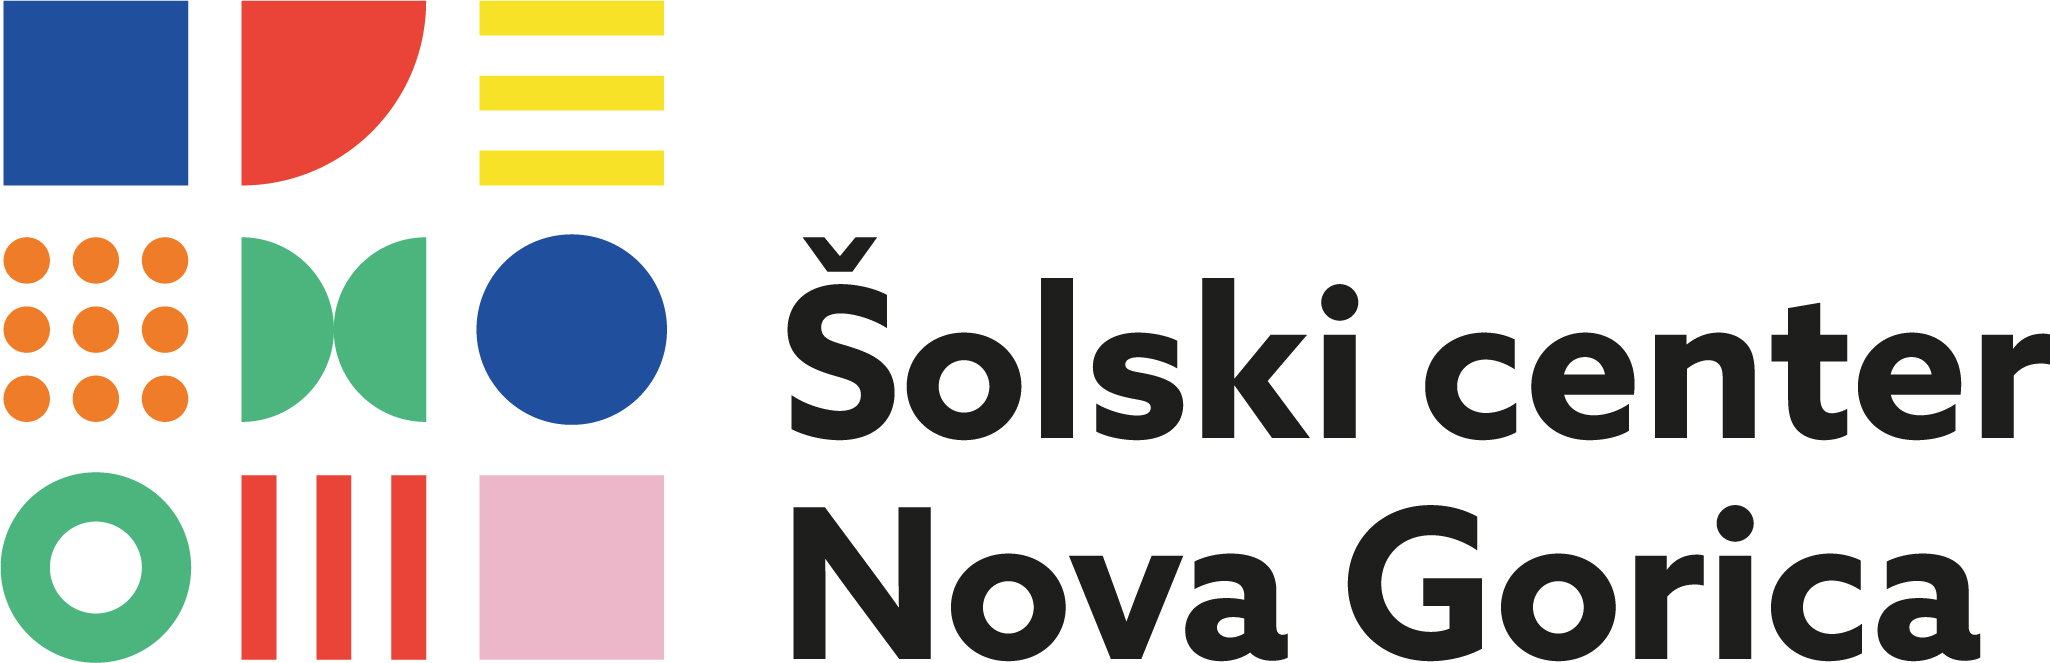 SCNG_Barvni_Logo z nazivom